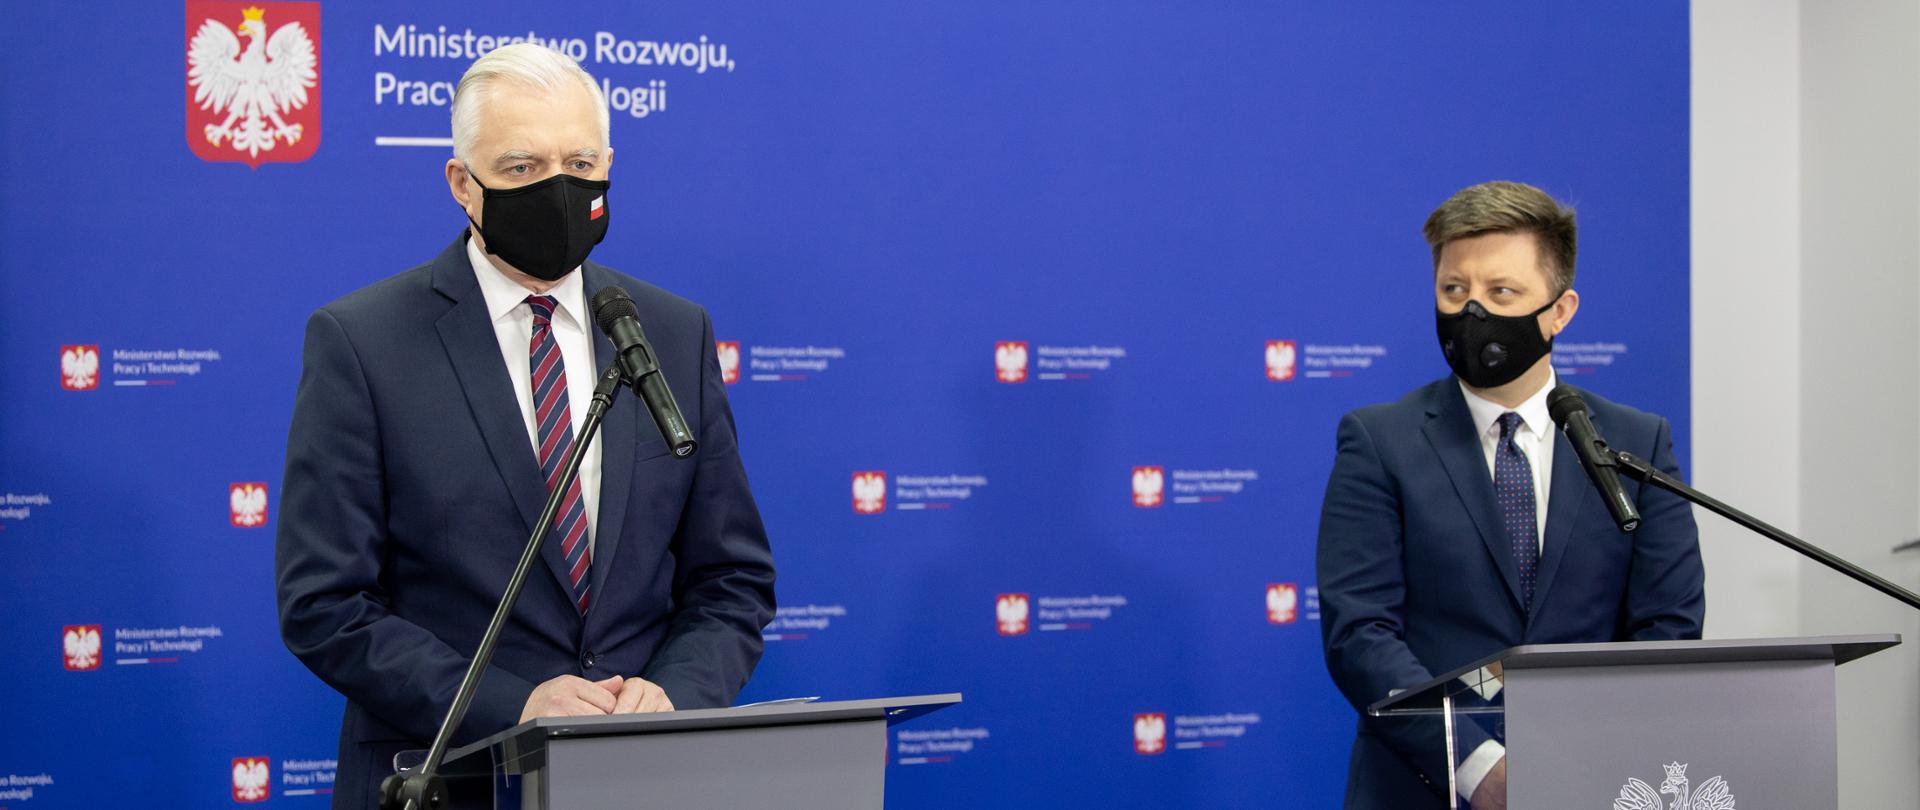 Zdjęcie przedstawia wicepremiera, szefa MRPiT Jarosława Gowina i szef KPRM Michała Dworczyka podczas konferencji nt. wsparcia dla gmin górskich 